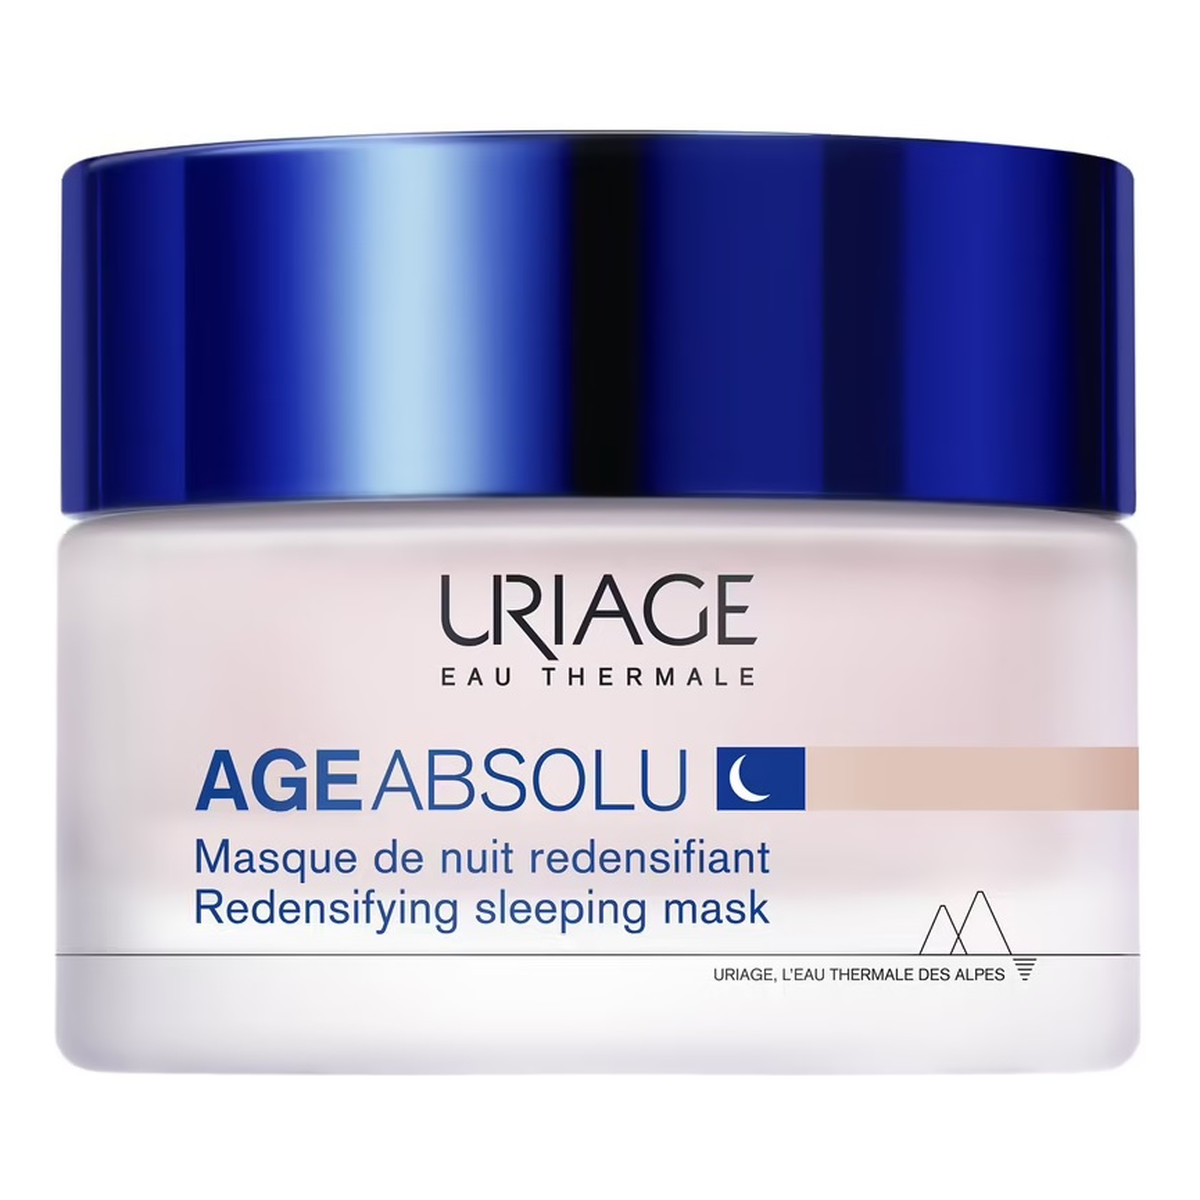 Uriage Age absolu redensifying sleeping mask maska przeciwstarzeniowa na noc 50ml